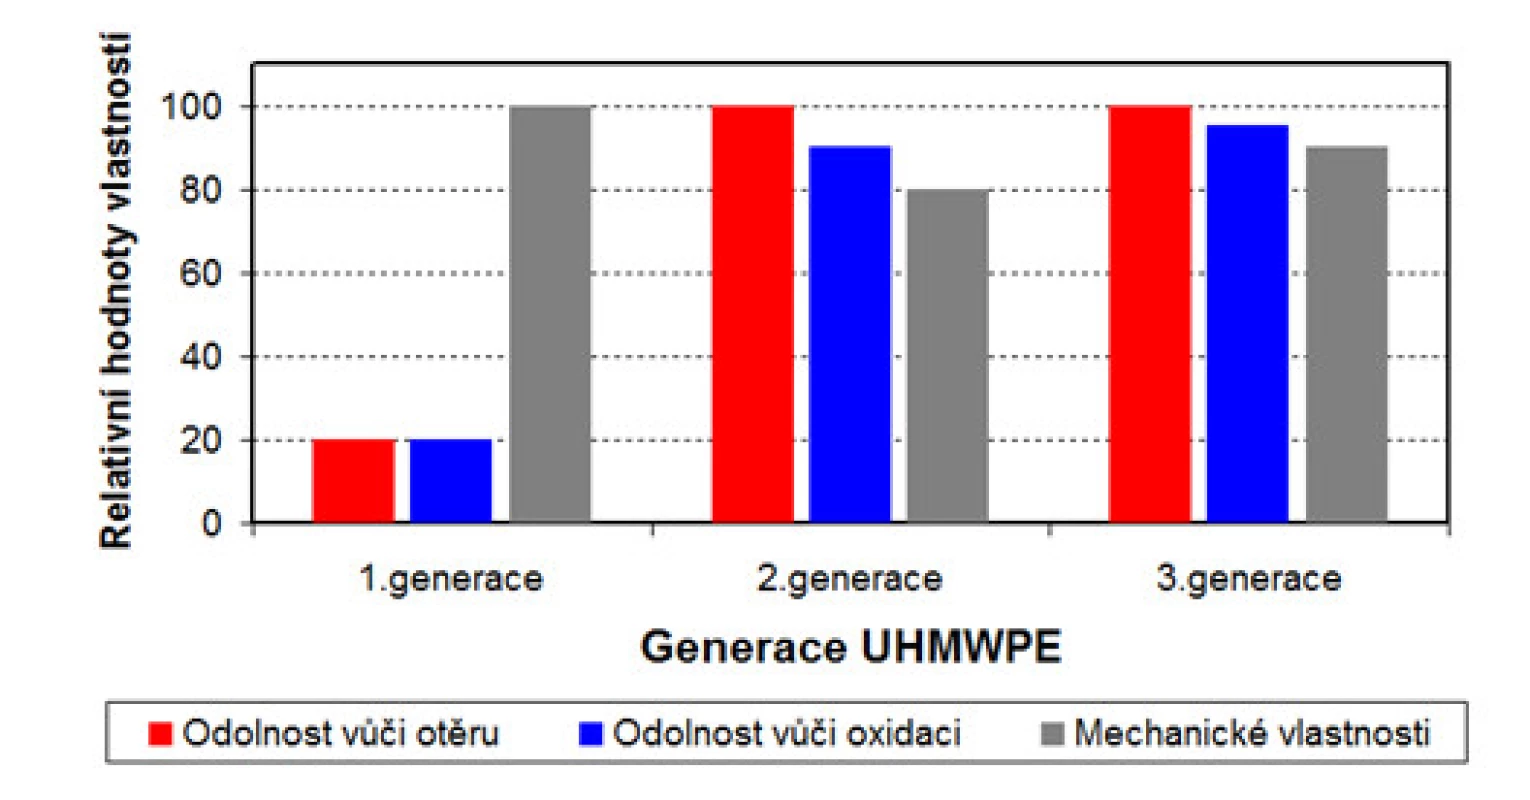 Porovnání vlastností UHMWPE jednotlivých generací